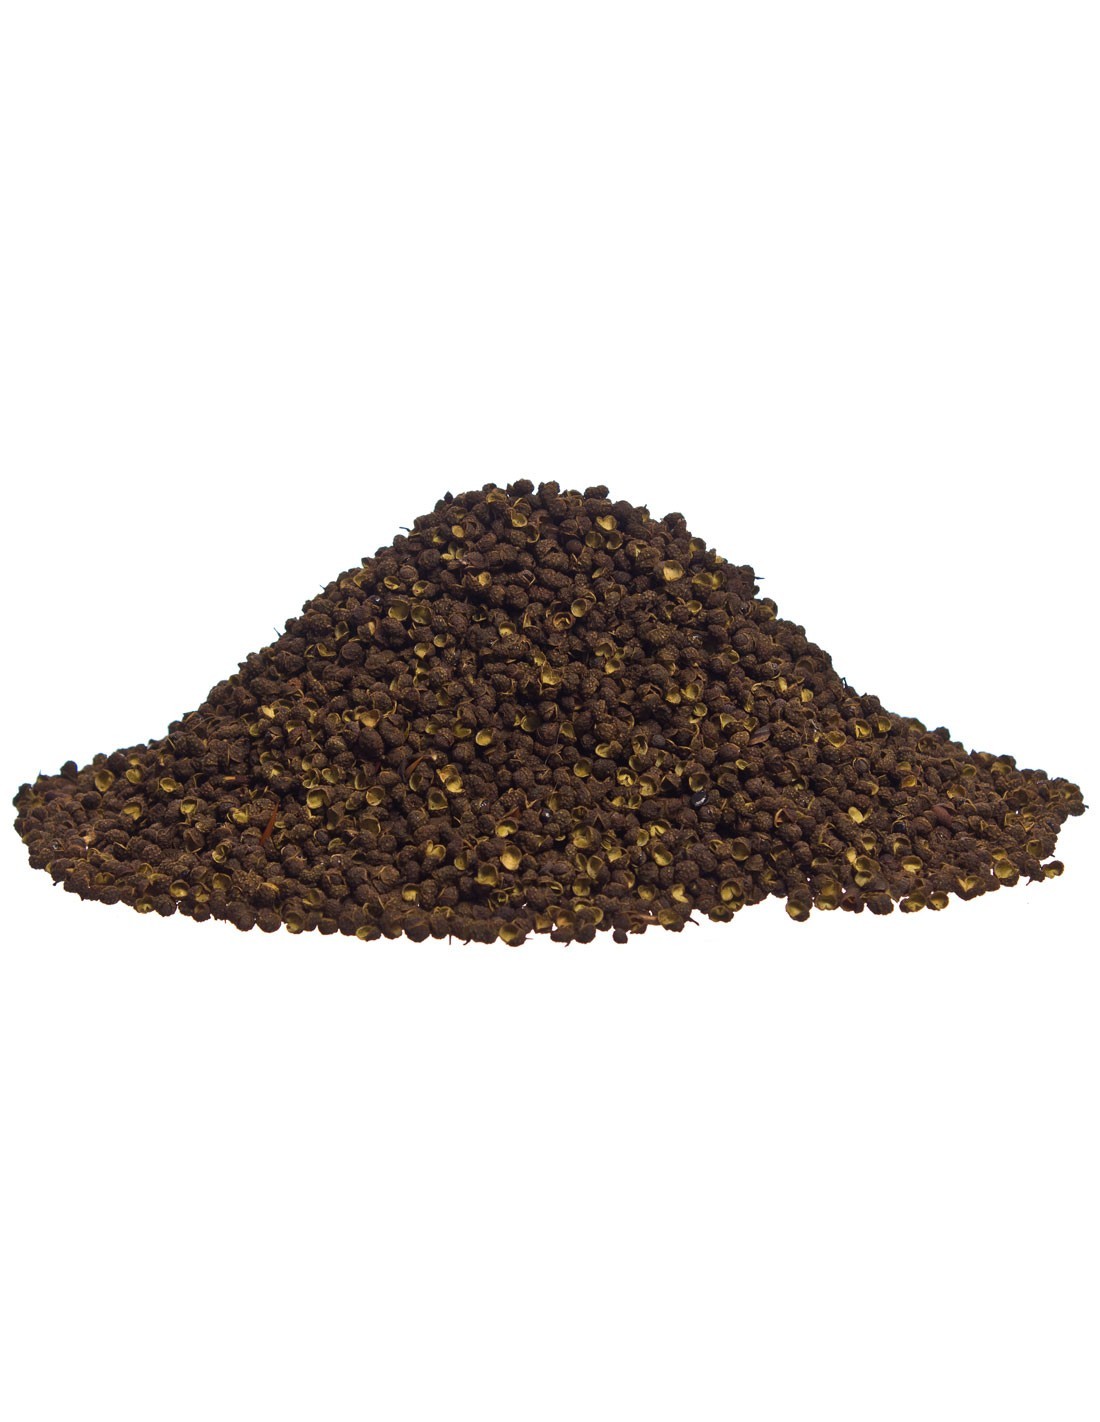 Poivre noir grains 500g, Epices, poivres